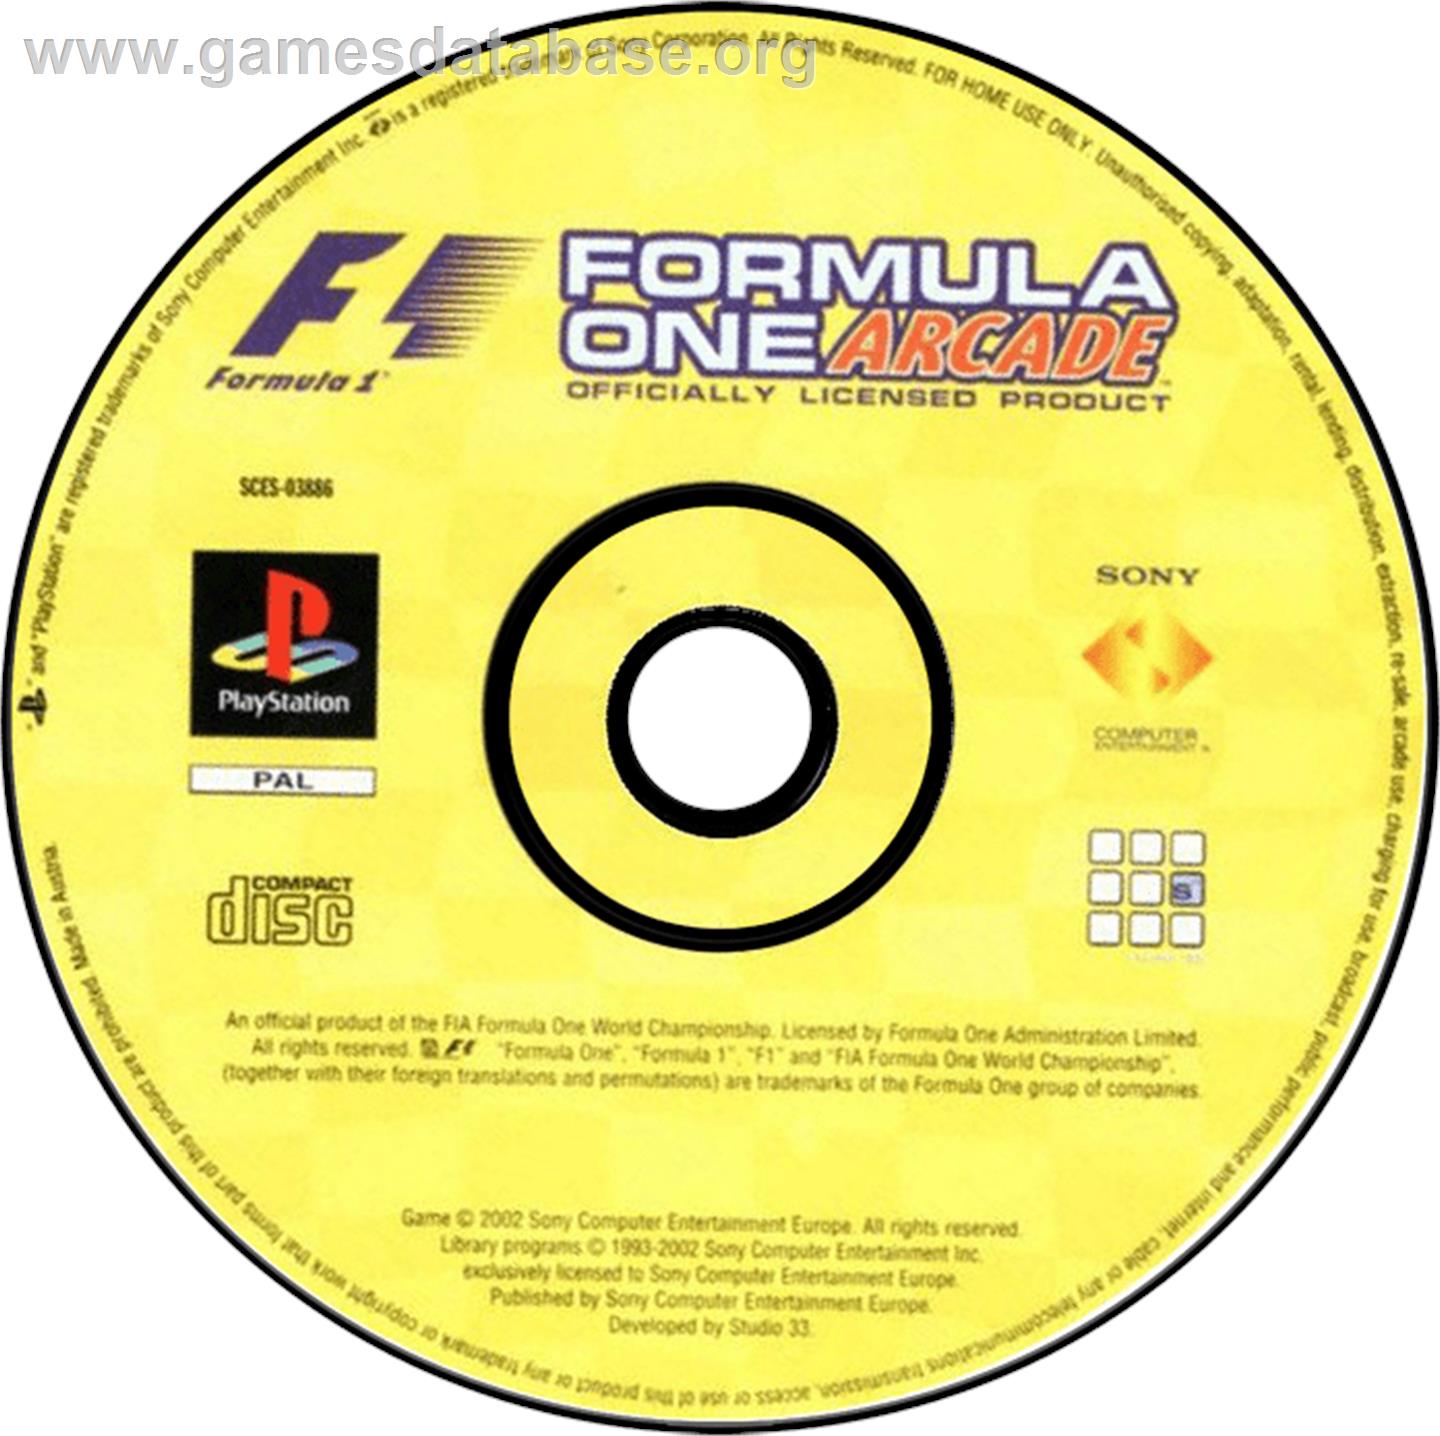 Formula One Arcade - Sony Playstation - Artwork - Disc